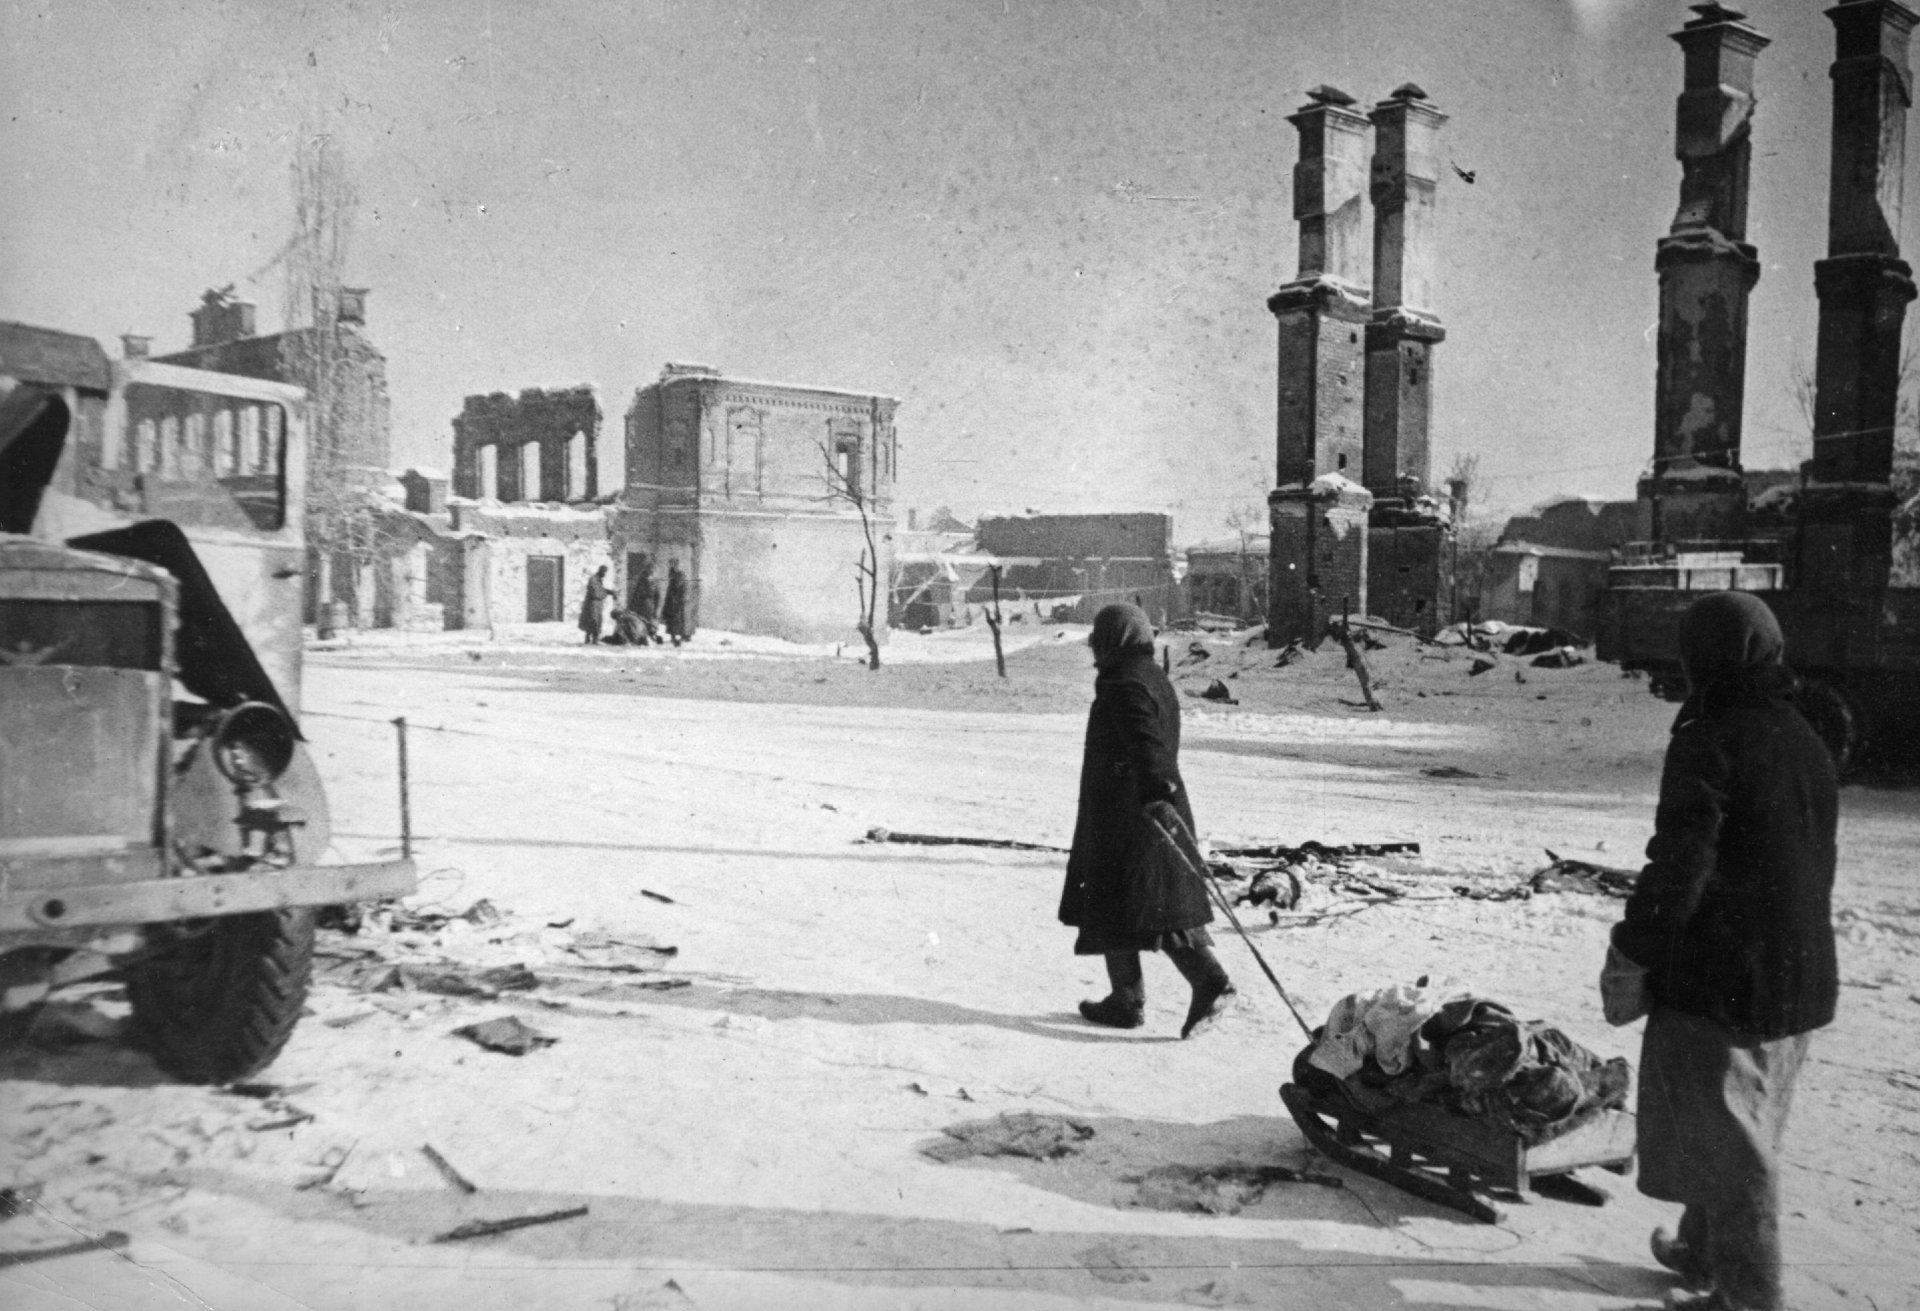 Така изглеждат улиците на Сталинград през зимата на 1942/1943 г.